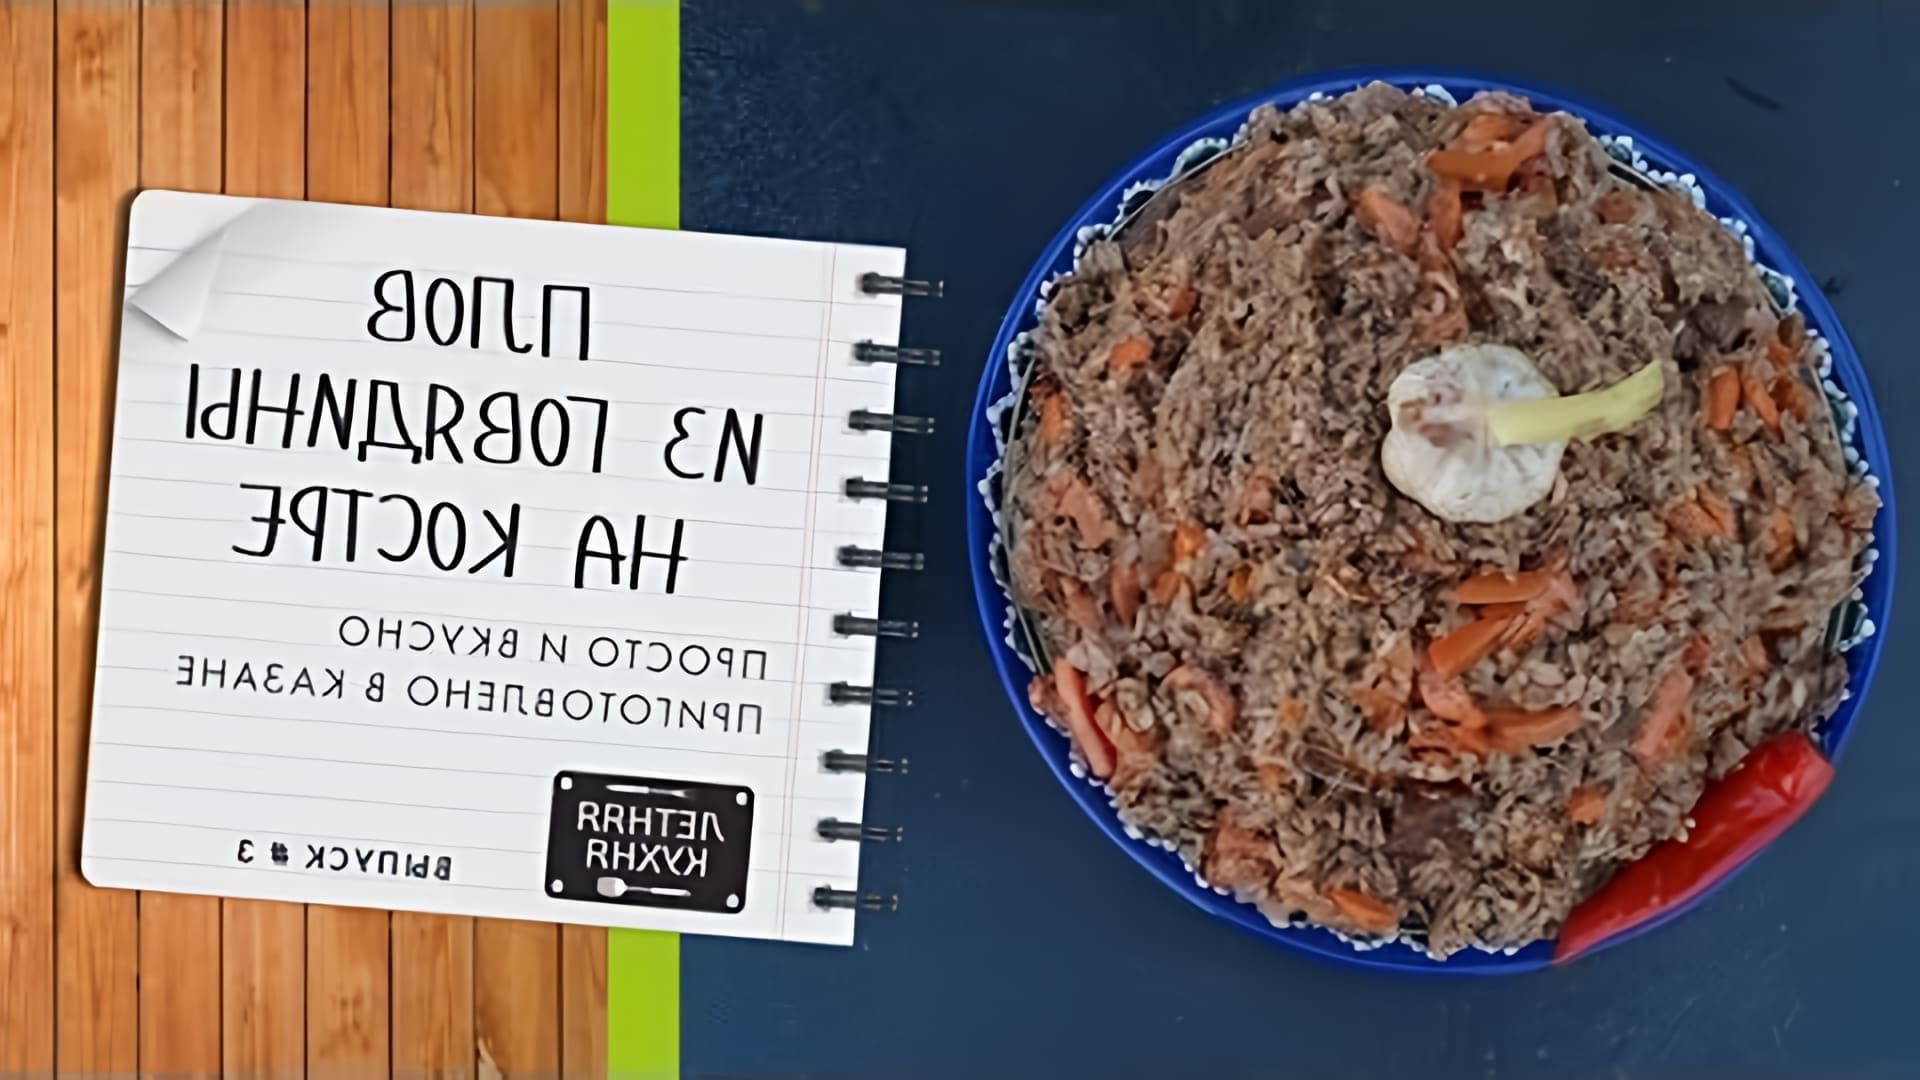 В данном видео демонстрируется процесс приготовления плова из говядины по традиционному узбекскому рецепту